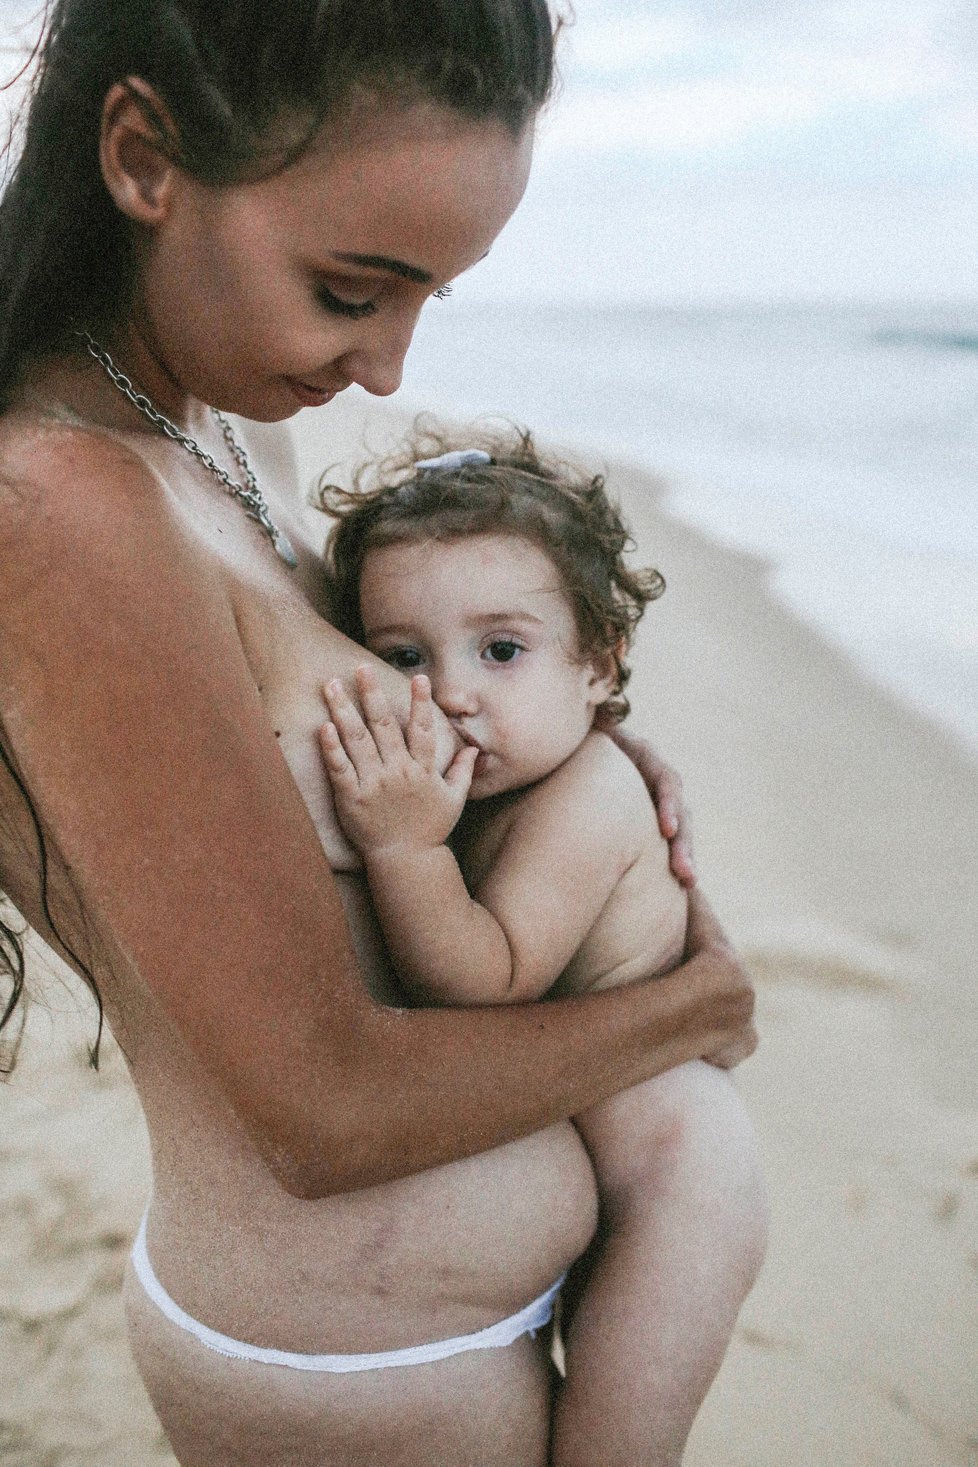 Inspirující snímky maminek s dětmi od australské fotografky Triny Cary